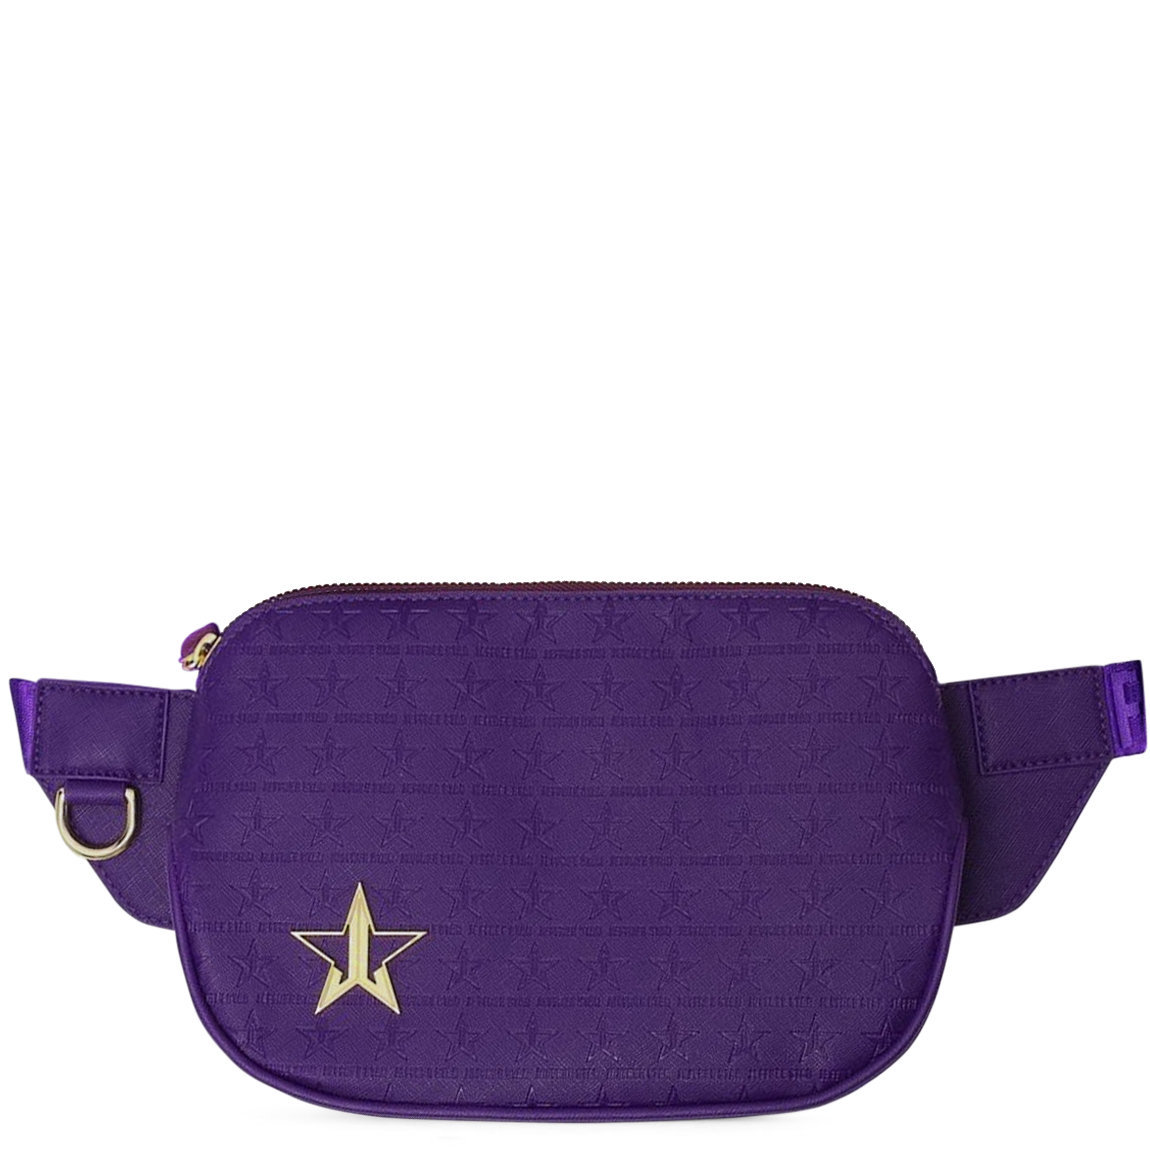 Jeffree Star Cosmetics Cross Body Bag Purple | Beautylish